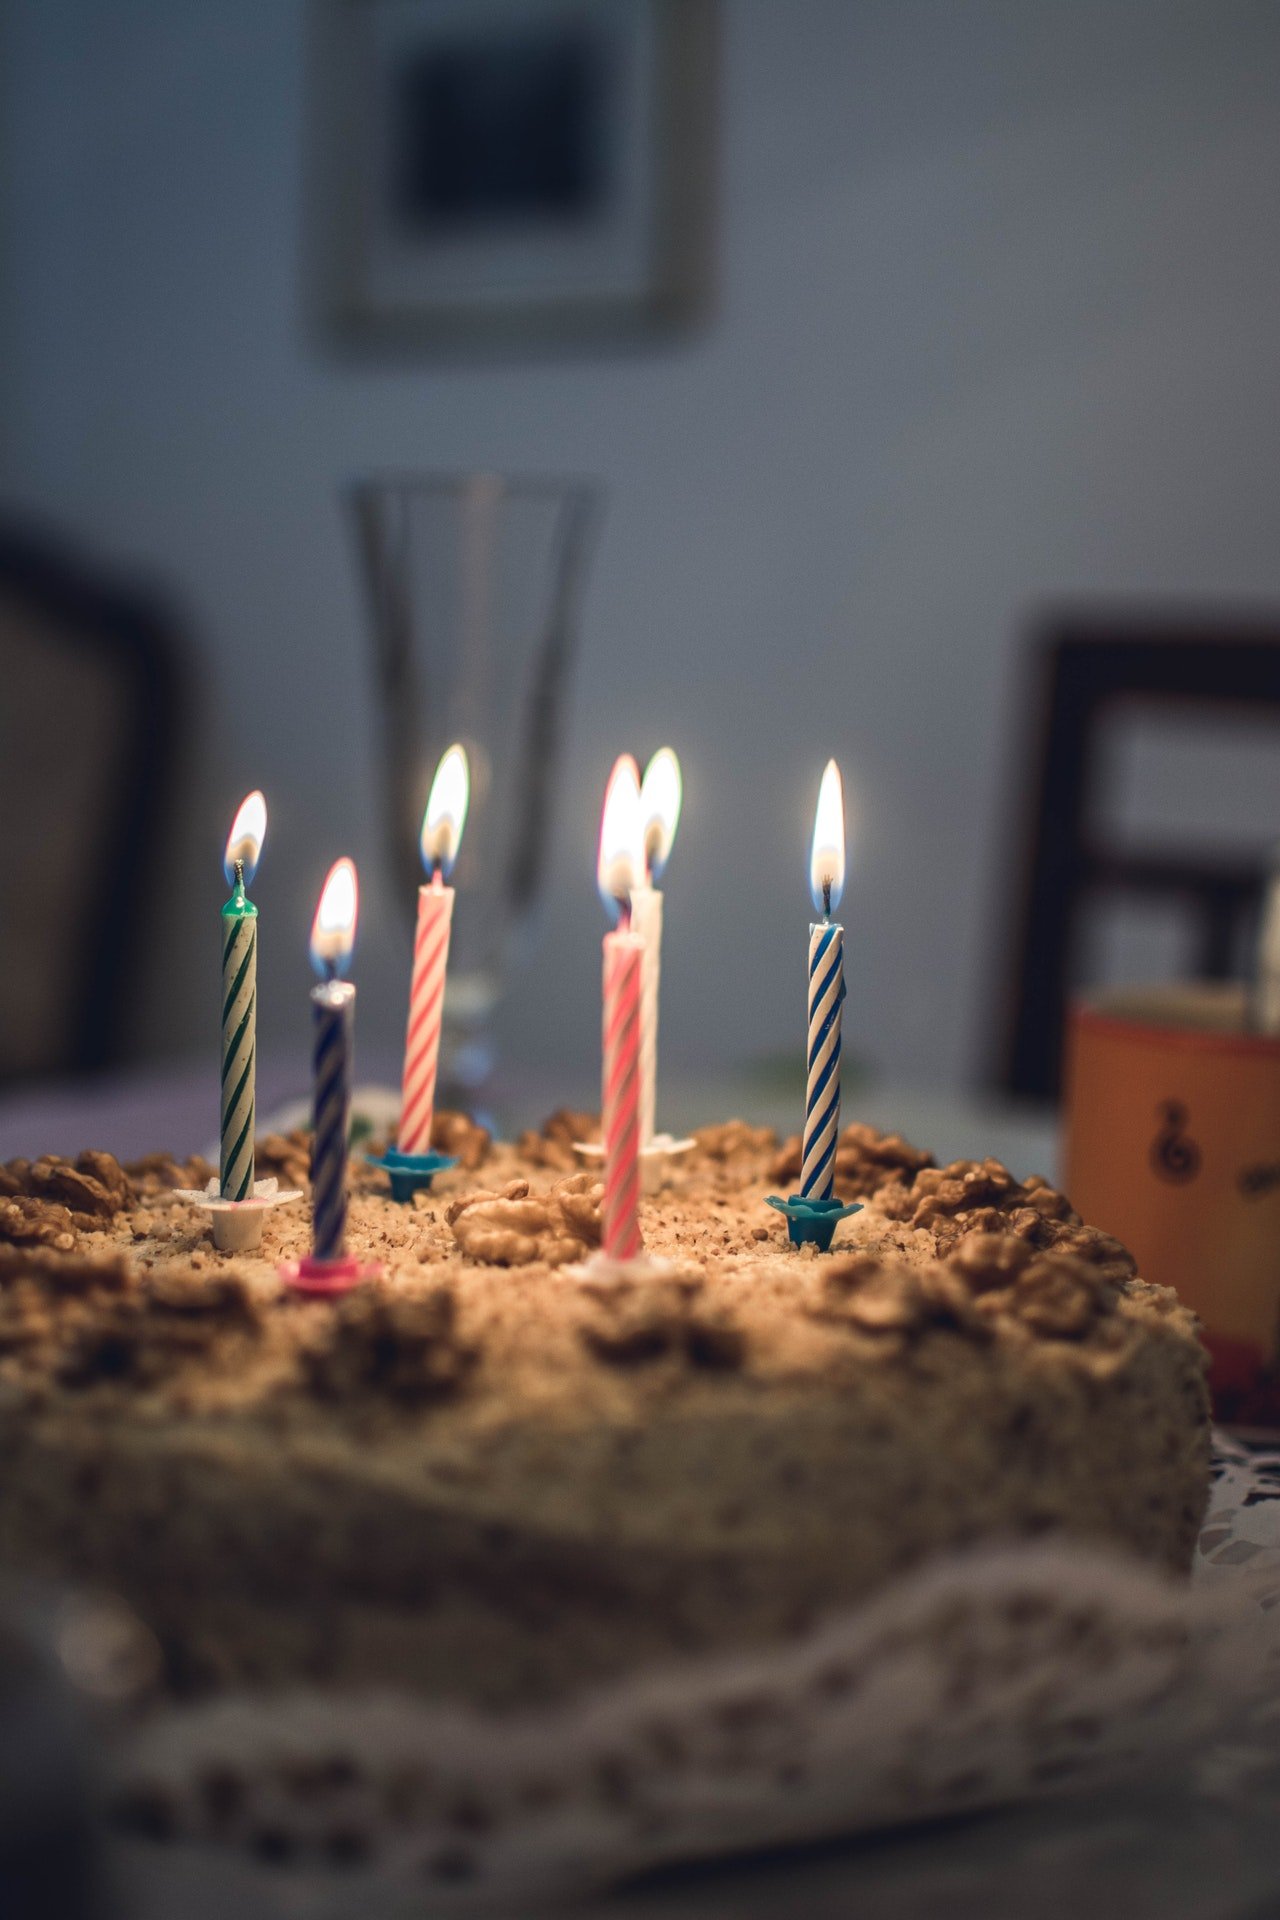 Nachdem Tom die Kerzen ausgeblasen hatte, hatten seine Eltern eine weitere Überraschung für ihn. | Quelle: Pexels